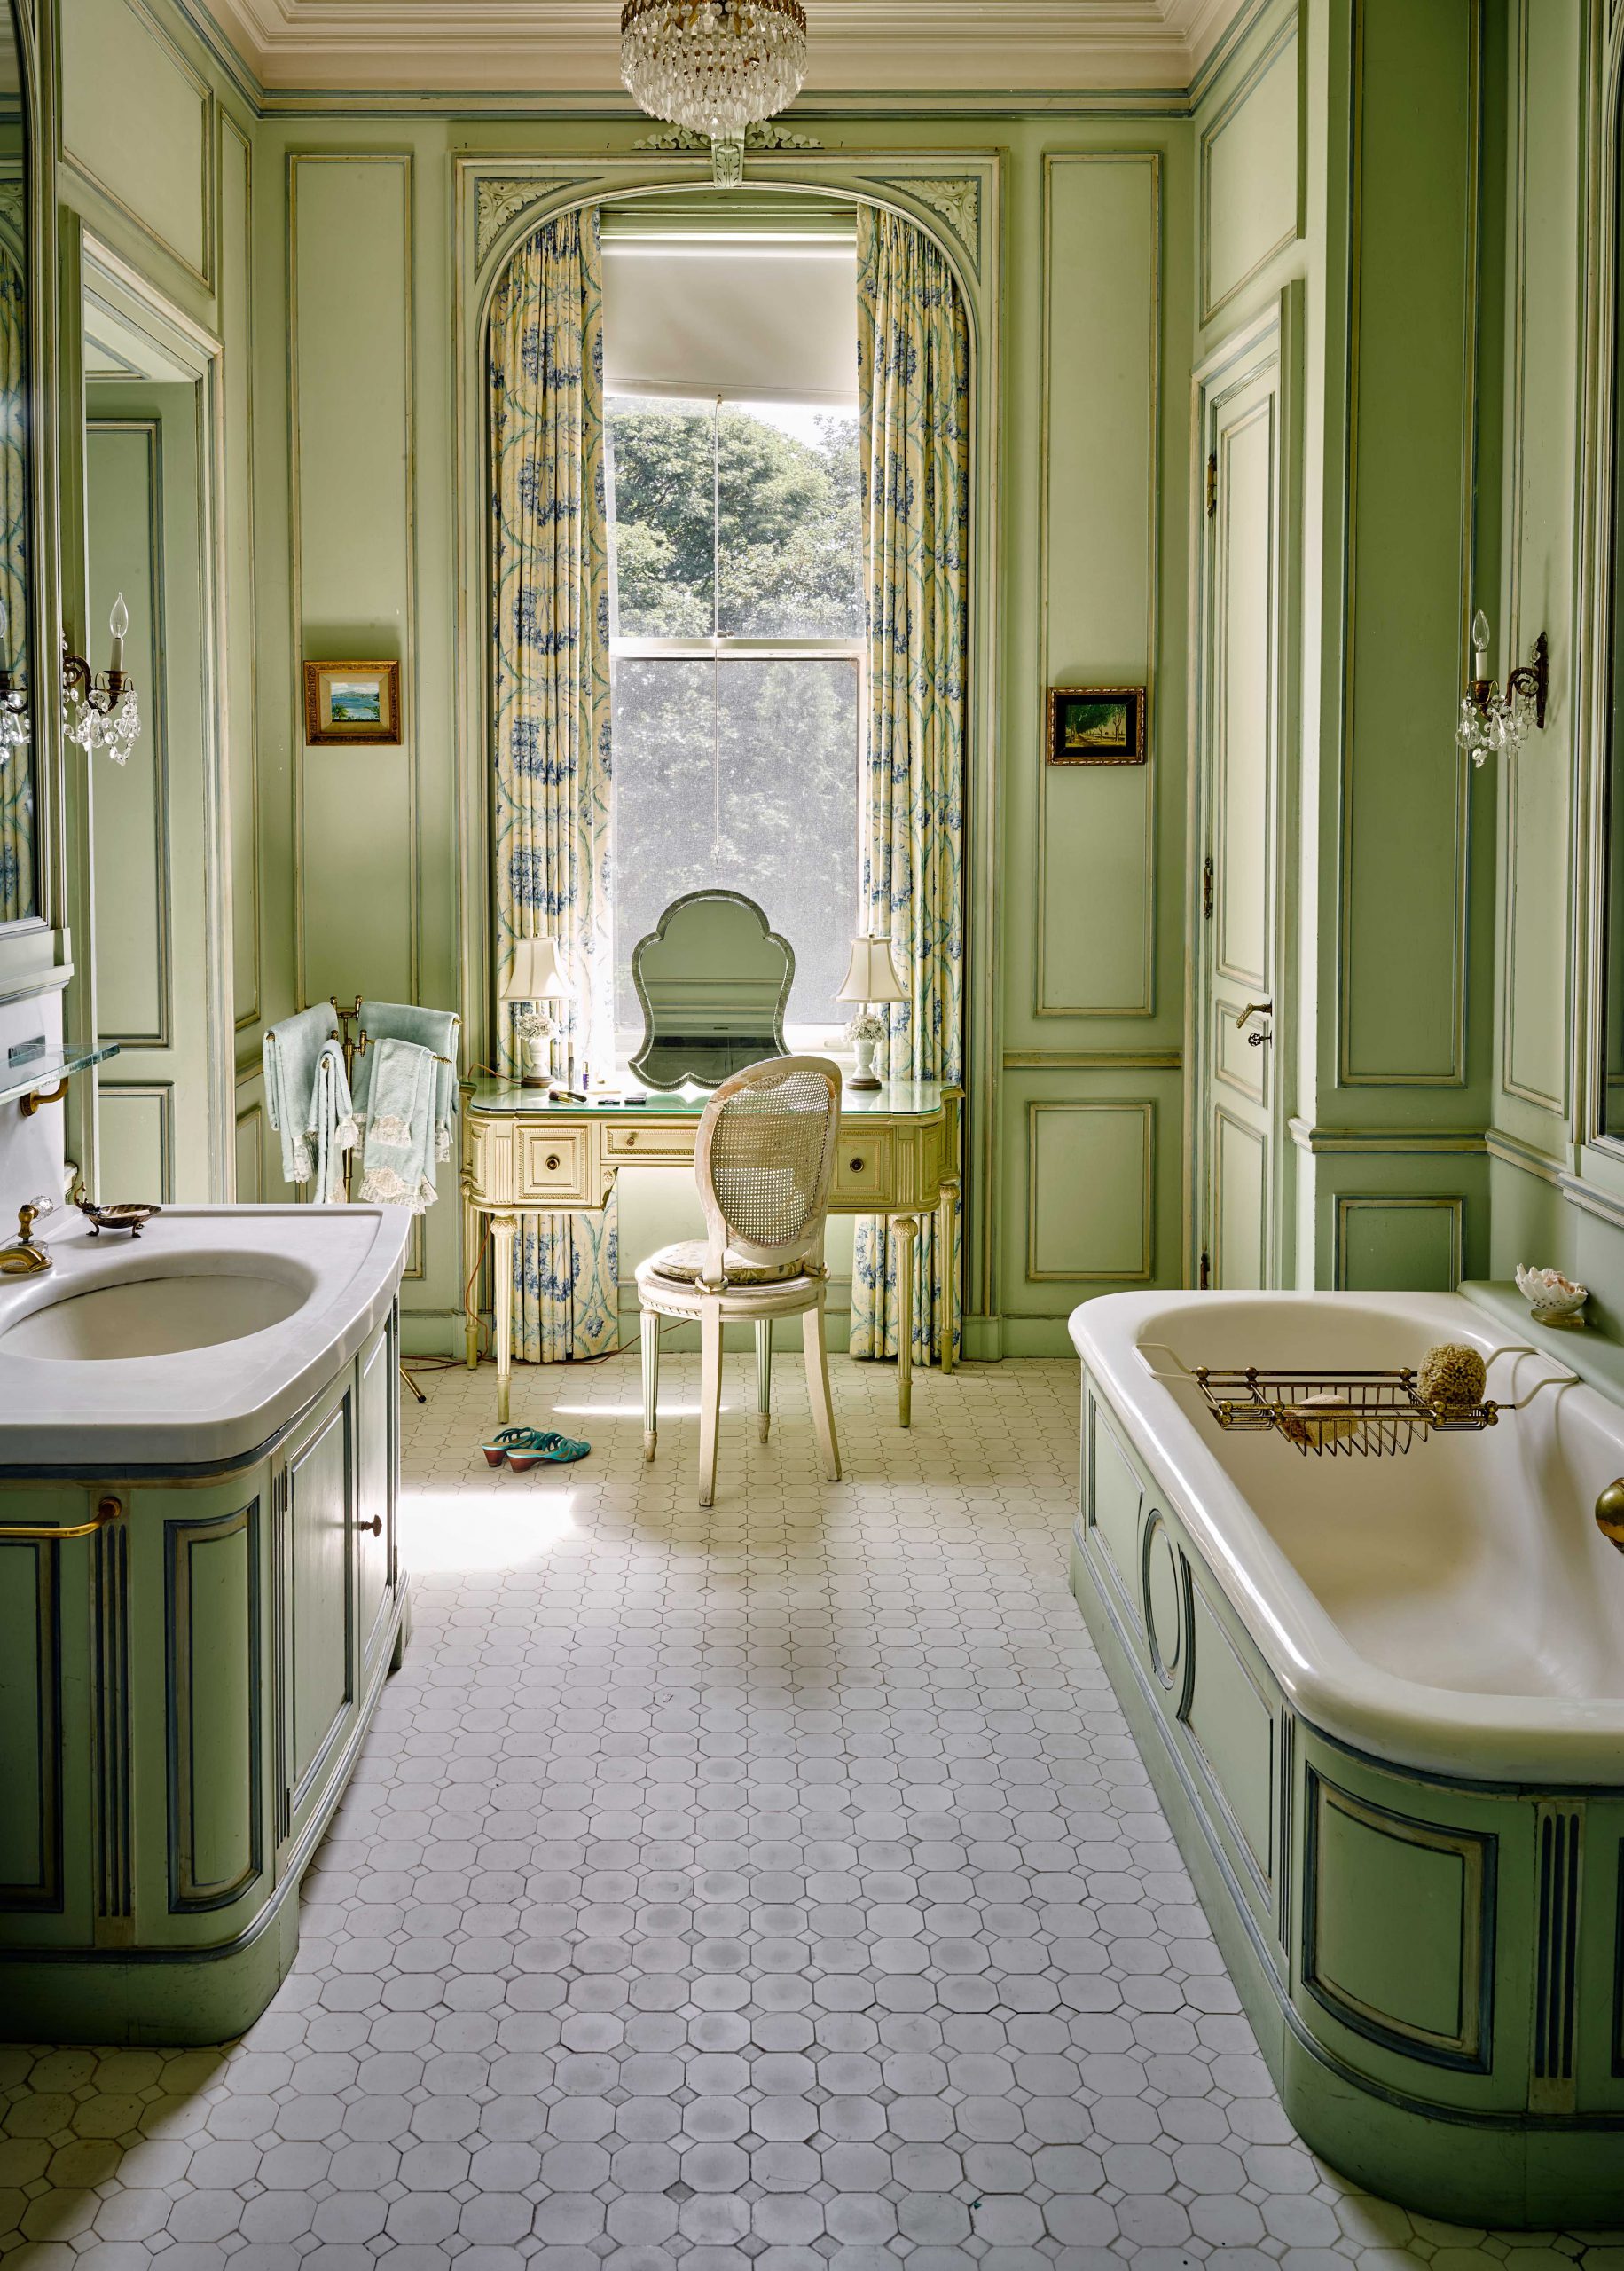 A Vintage Green Bathroom